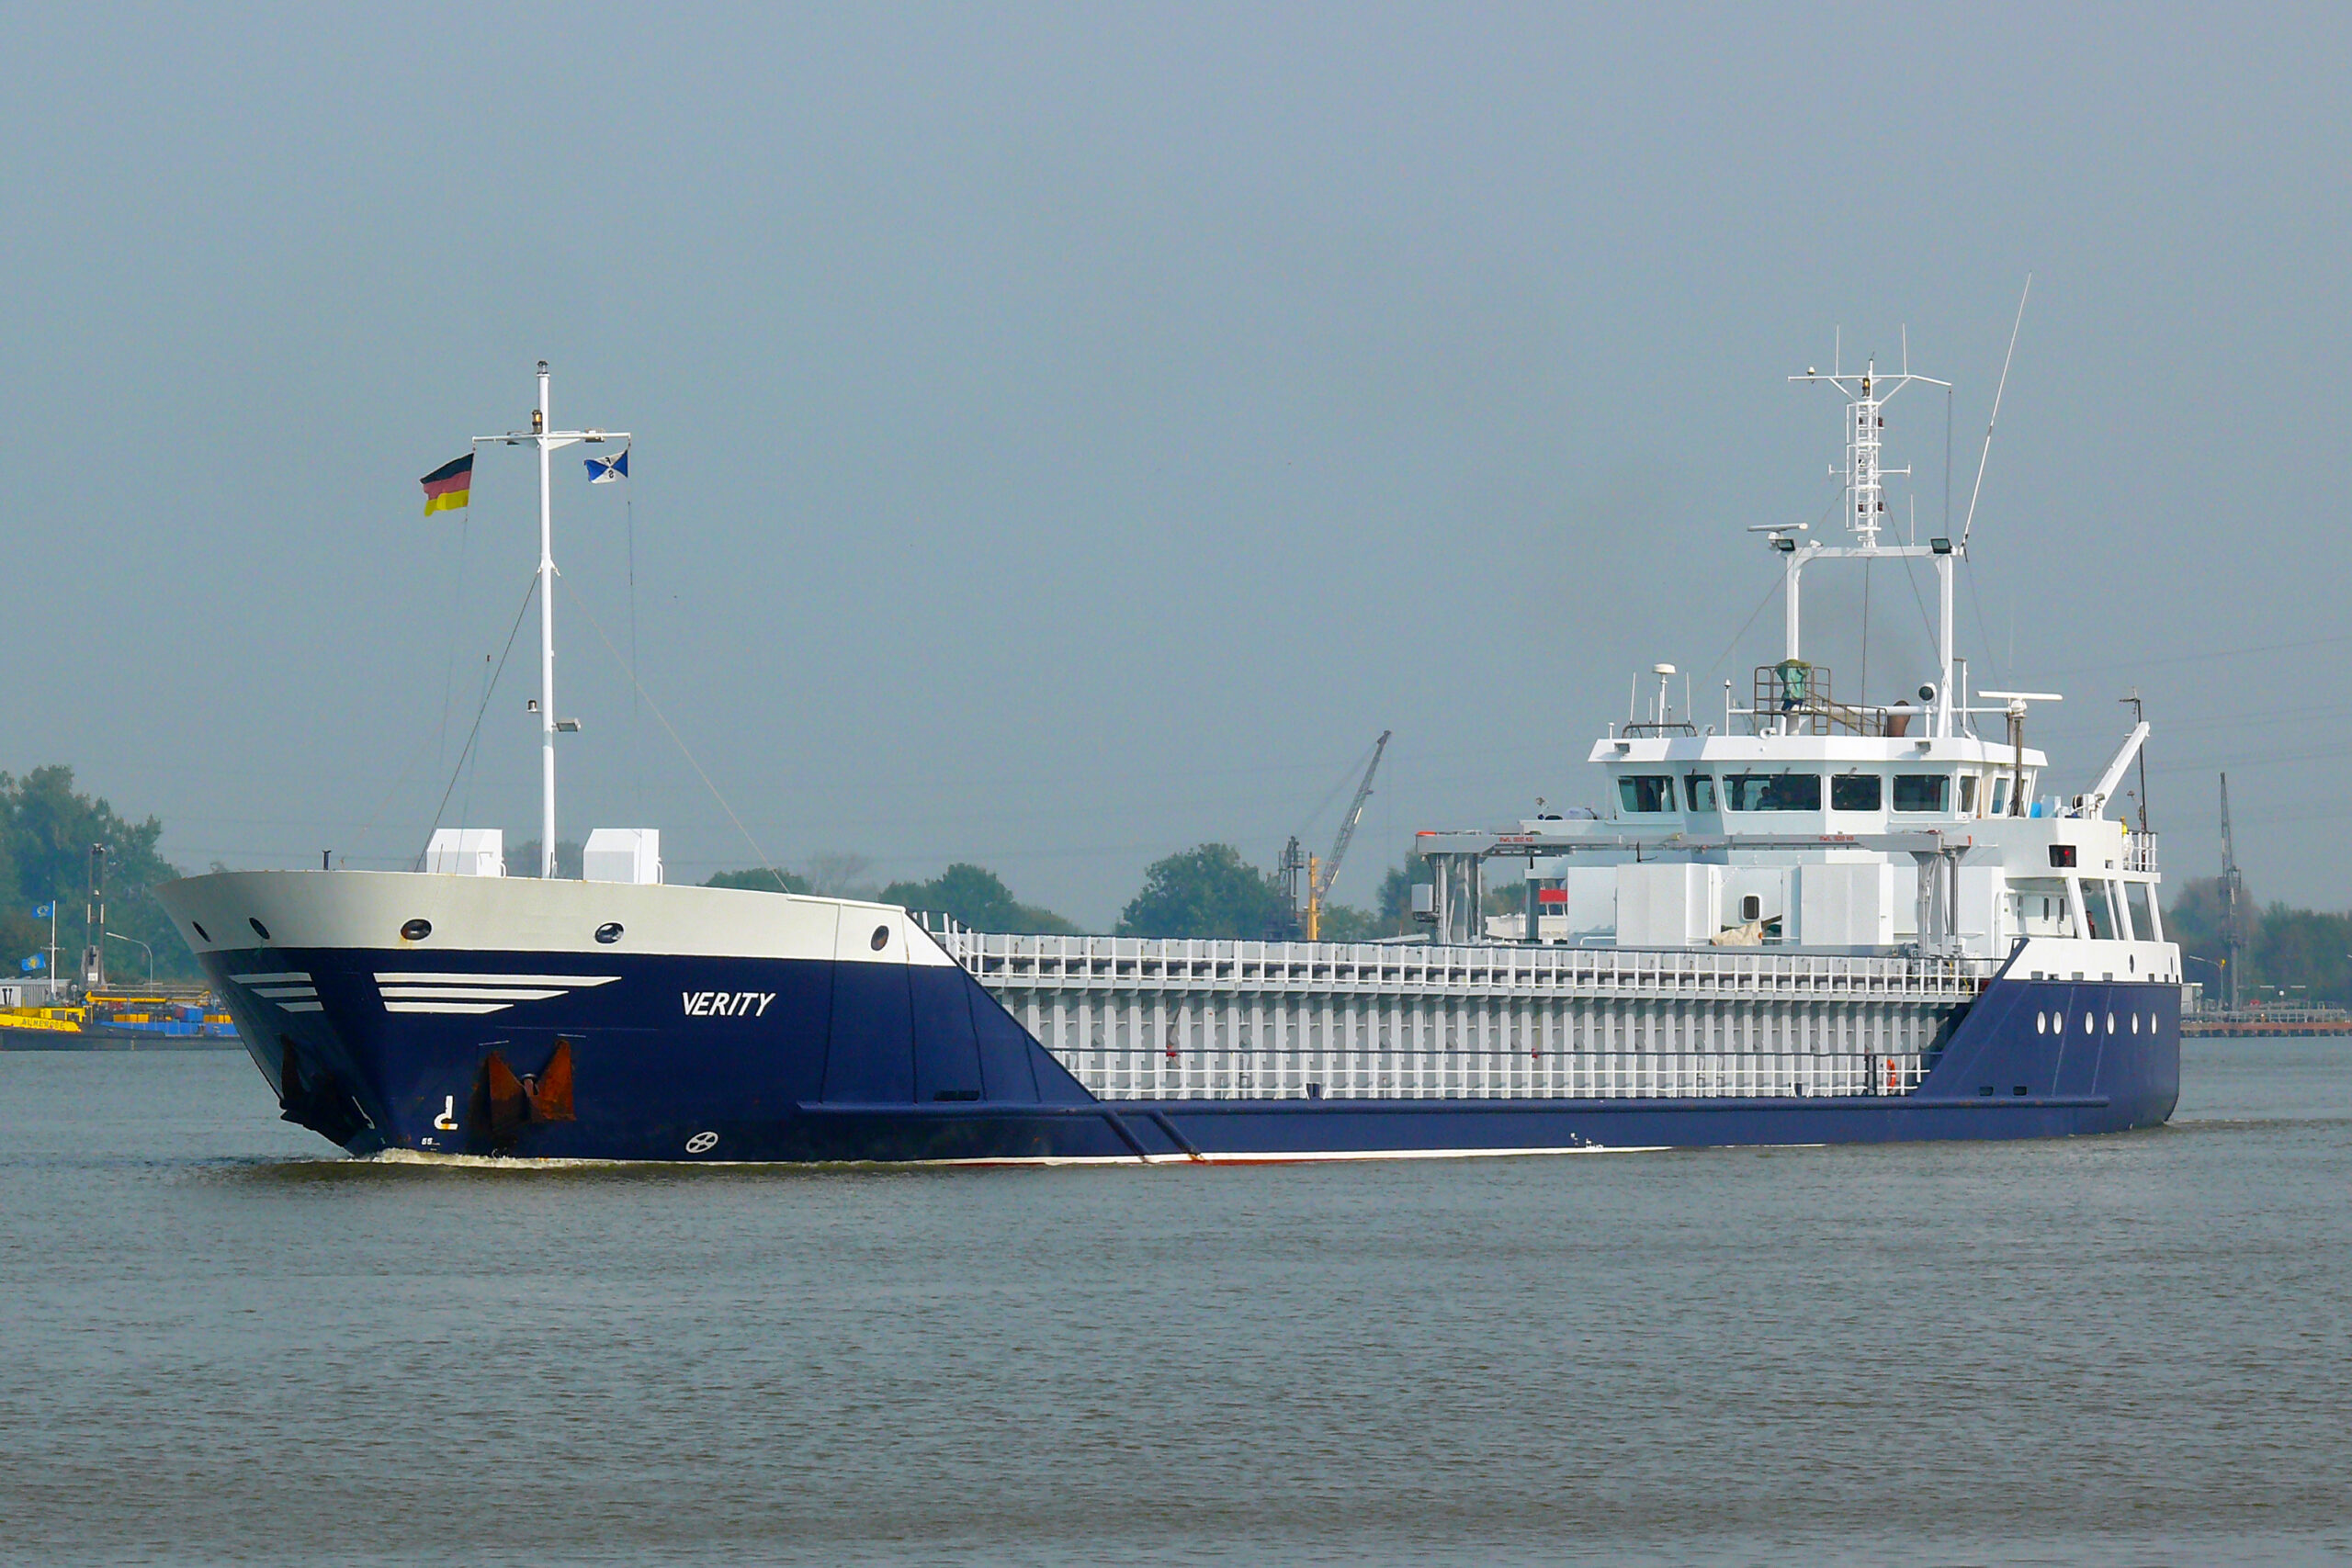 Der Frachter „Verity“ ist am Dienstagmorgen in der Nordsee mit einem anderen Frachter kollidiert. (Archivbild)